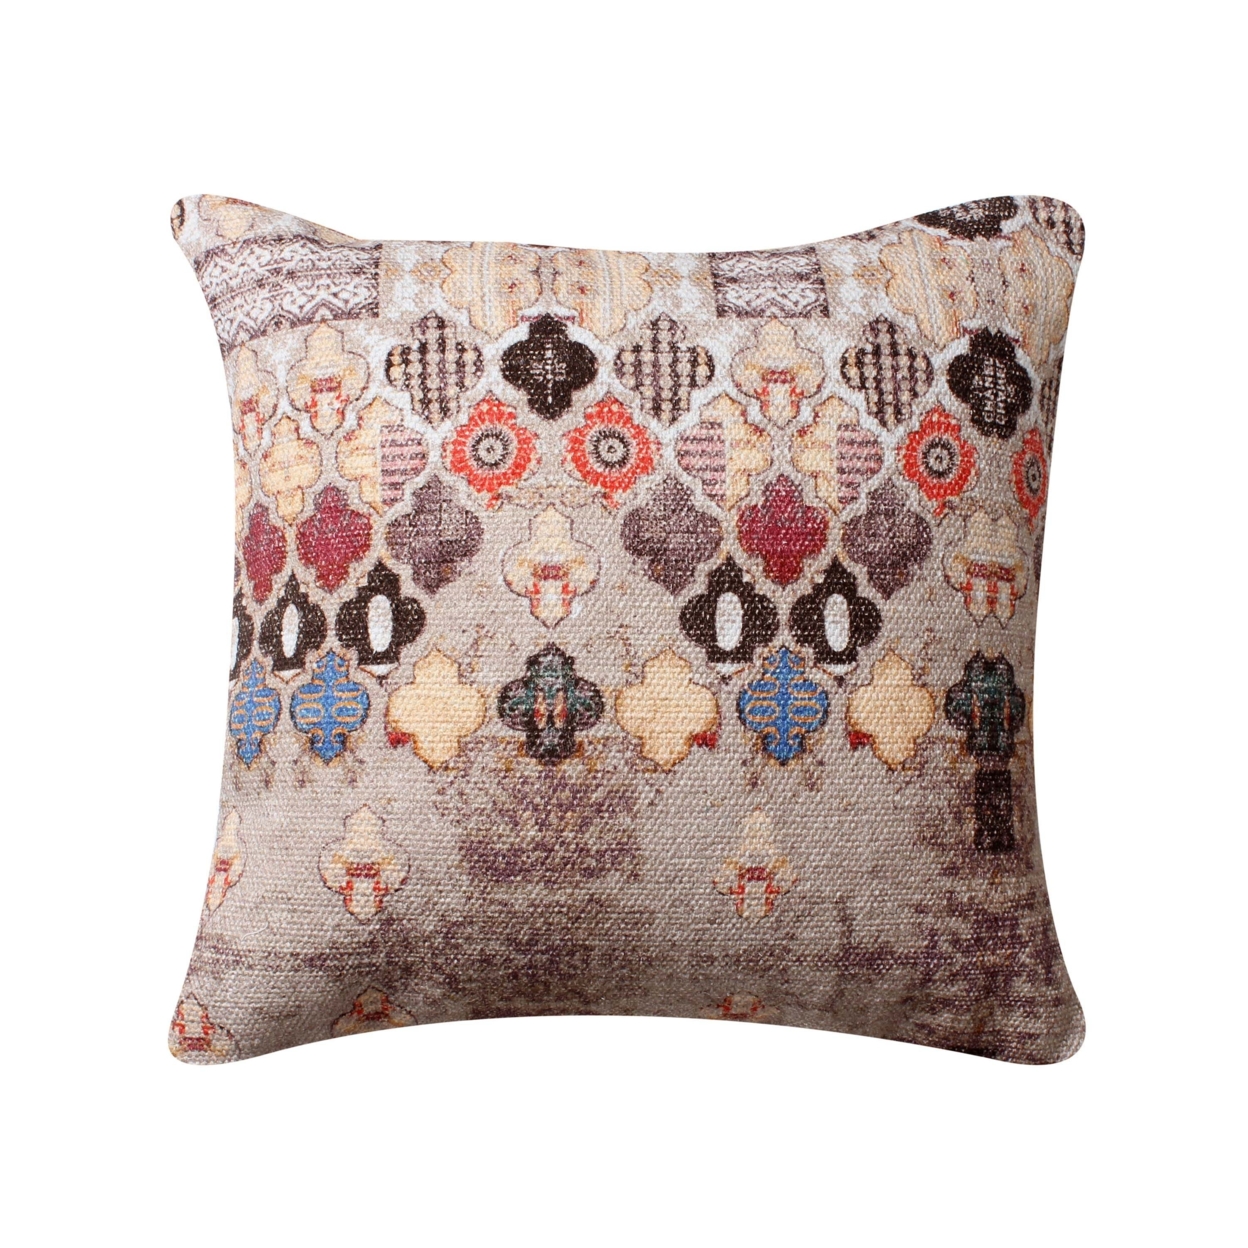 18 X 18 Square Cotton Accent Throw Pillow, Eastern Quatrefoil Print, Set Of 2, Multicolor